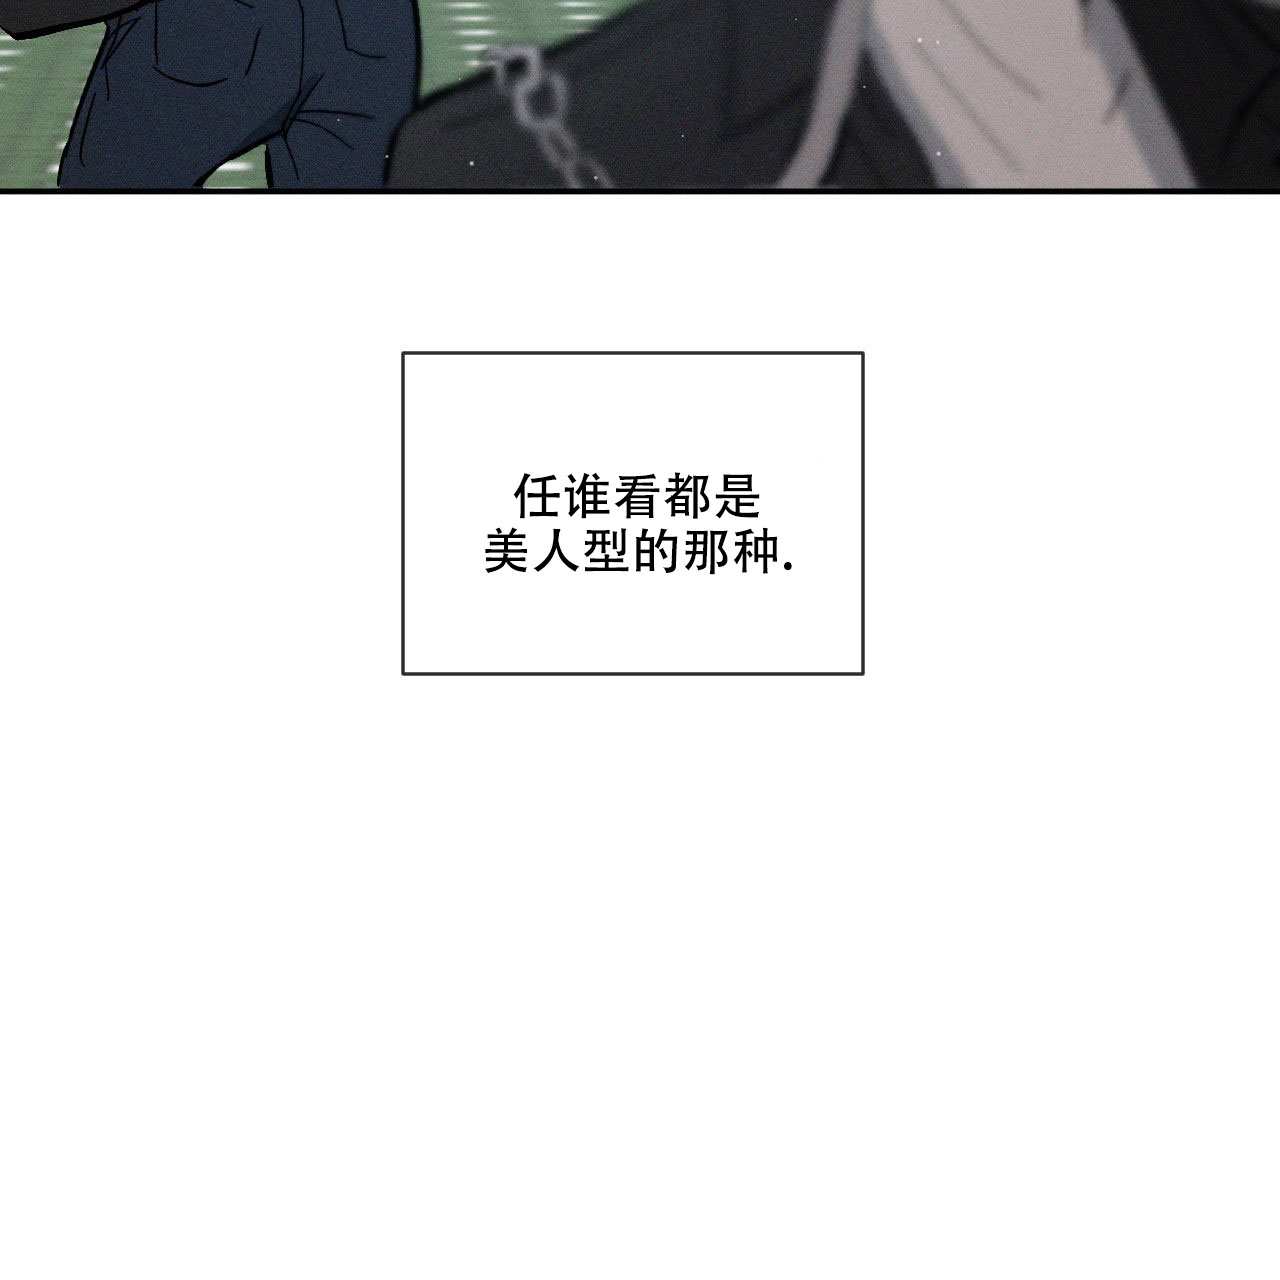 啵乐官网免费漫画24